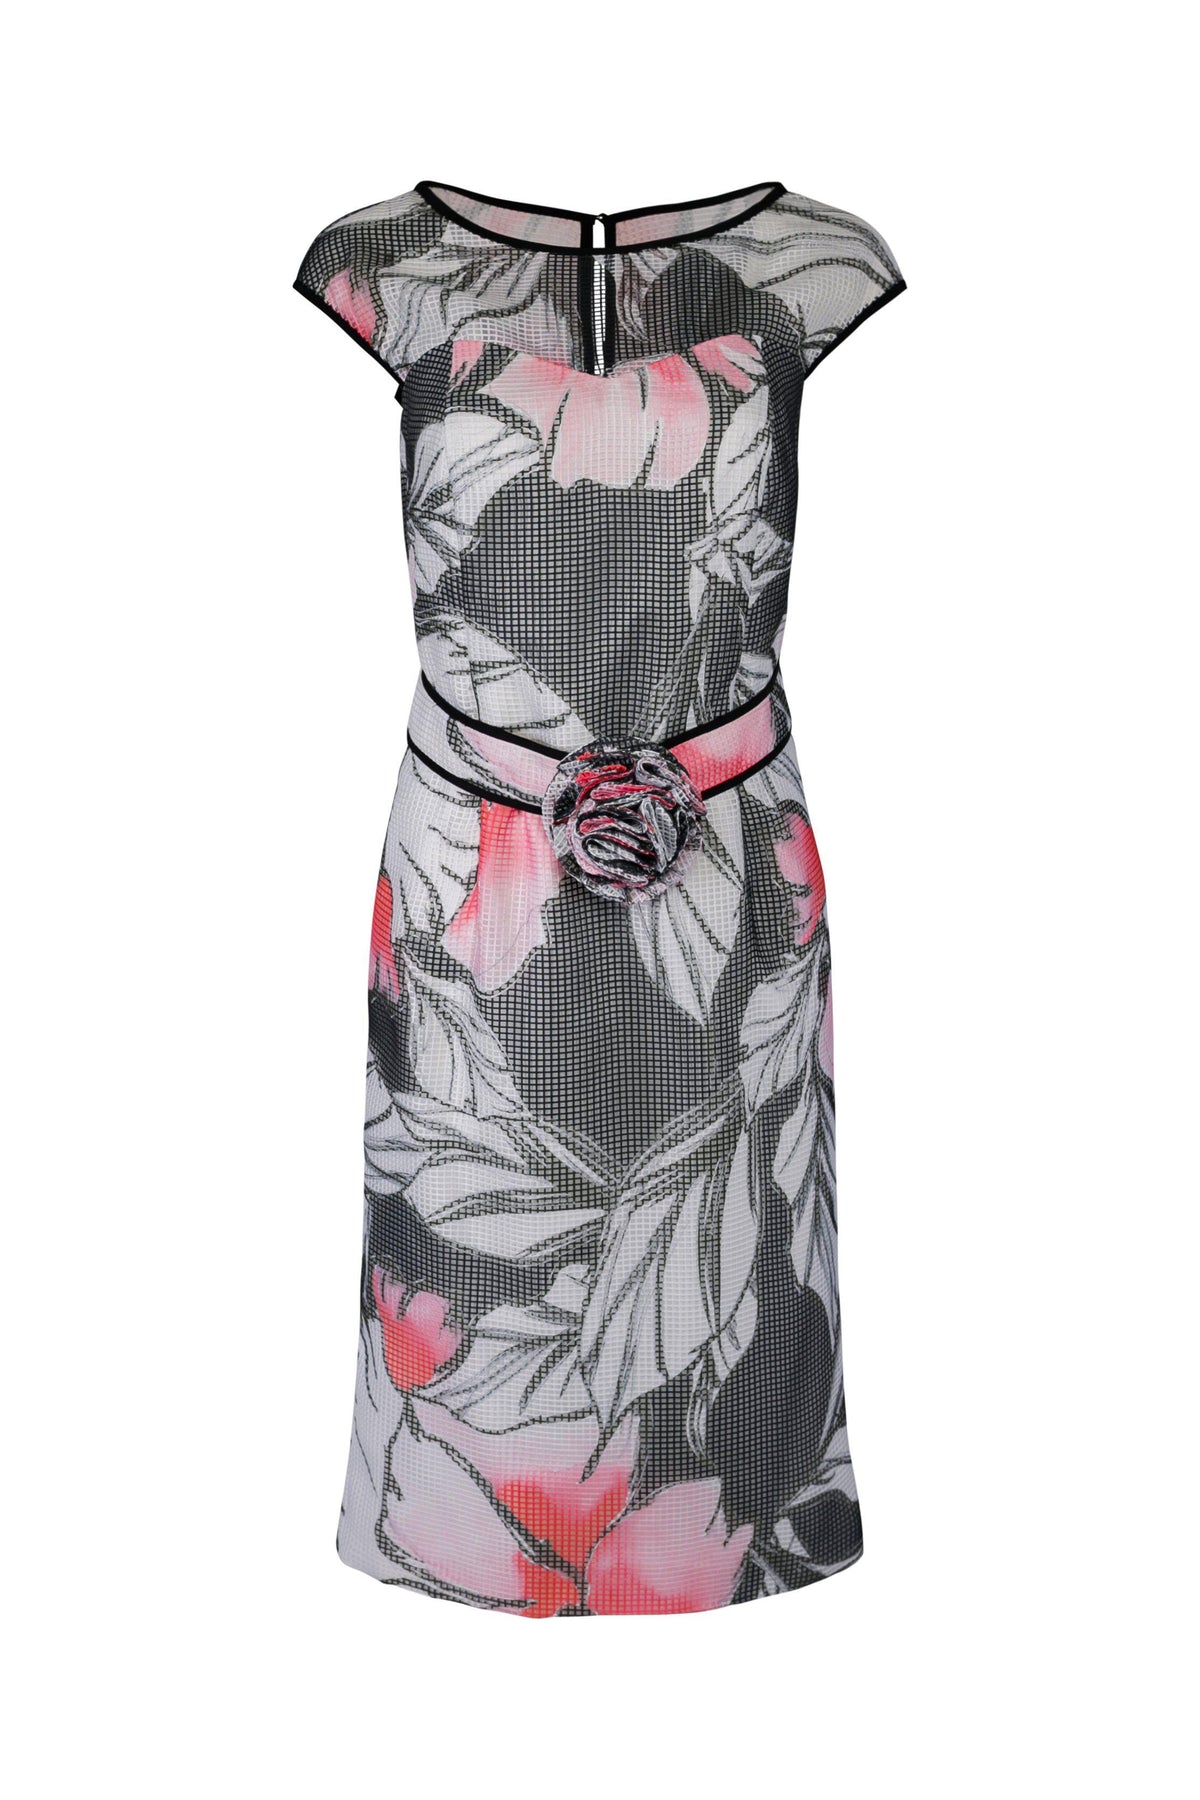 Luis Civit D839 - Charcoal print dress